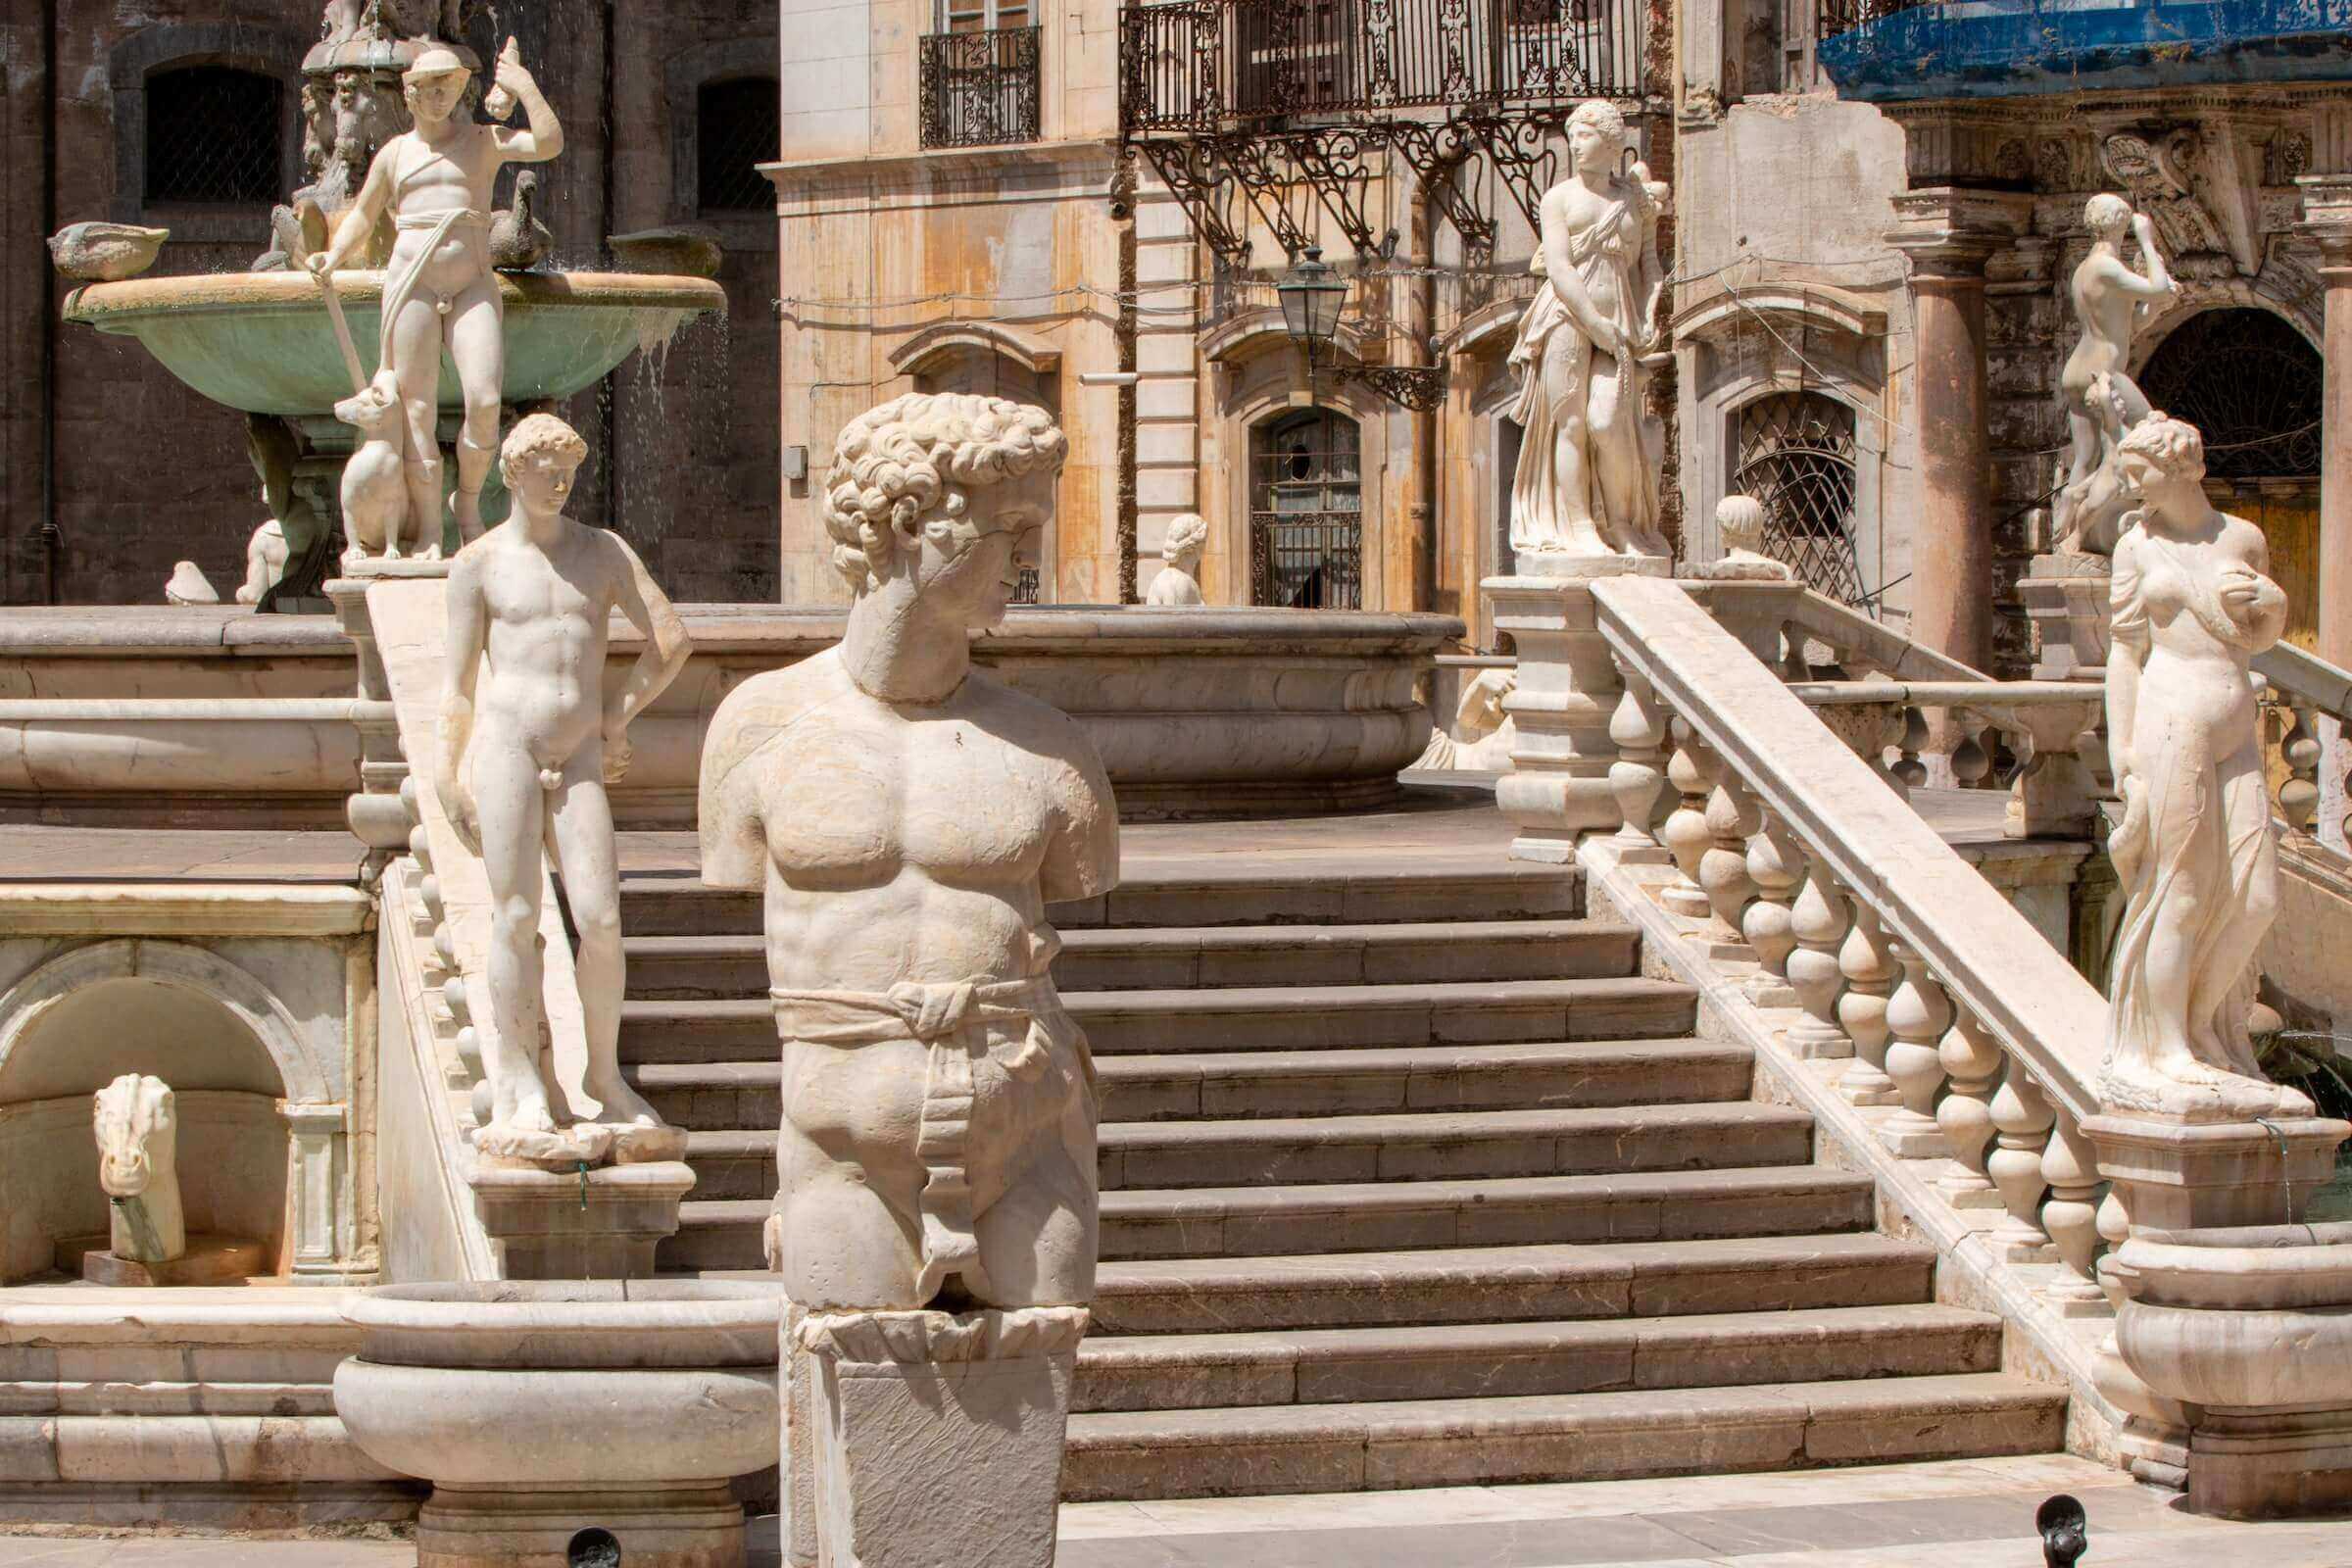 Palermo vibrant culture scene